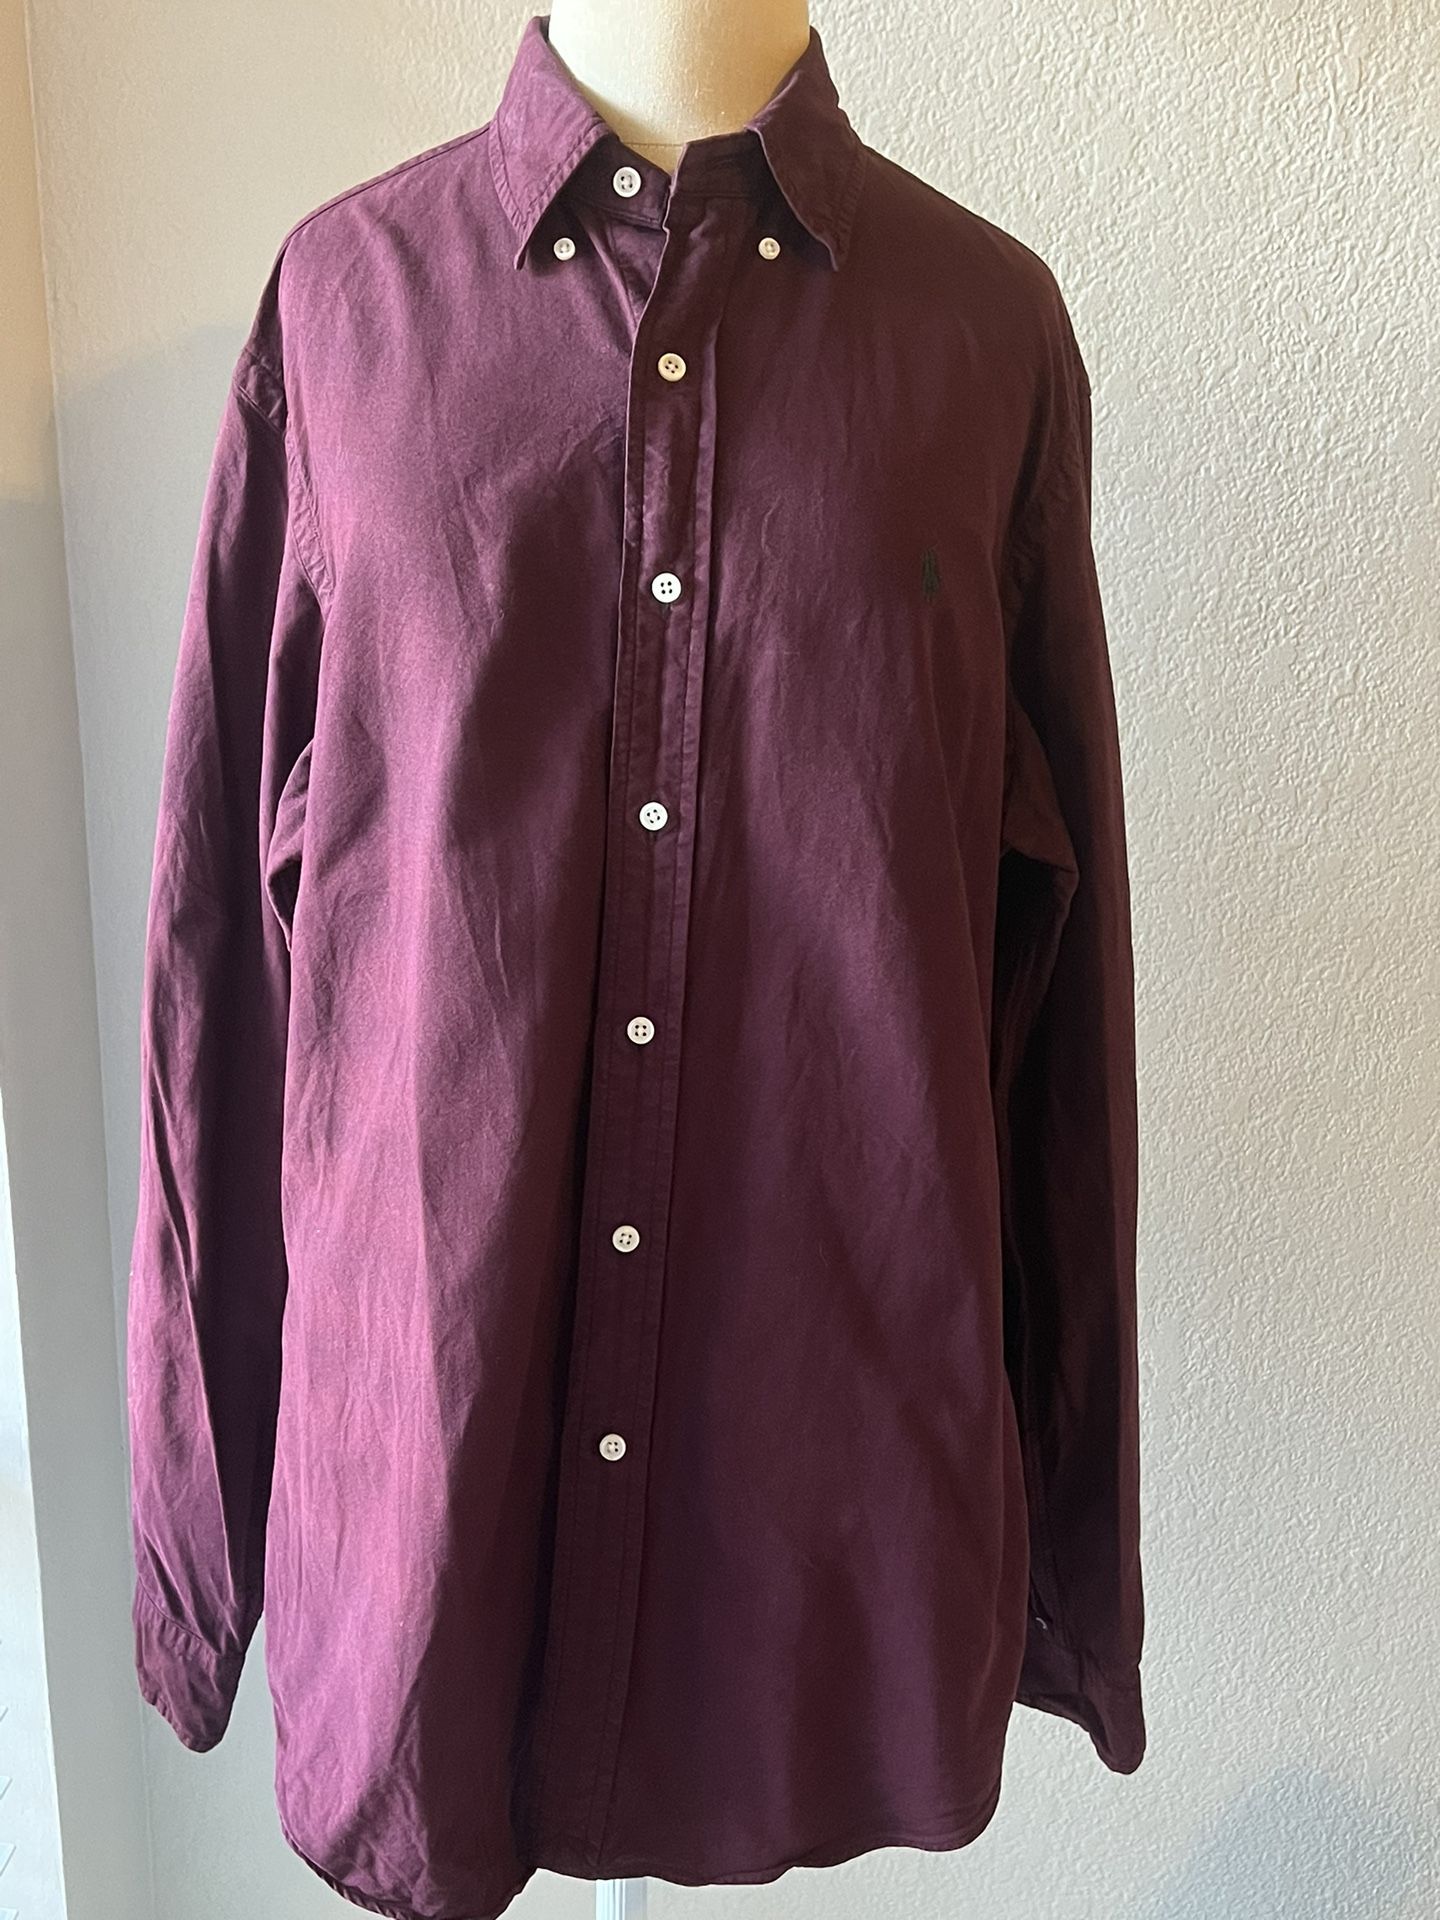 Ralph Lauren PoRalph Lauren Polo Long Sleeve Button-Up 100% Cotton Shirt Size M